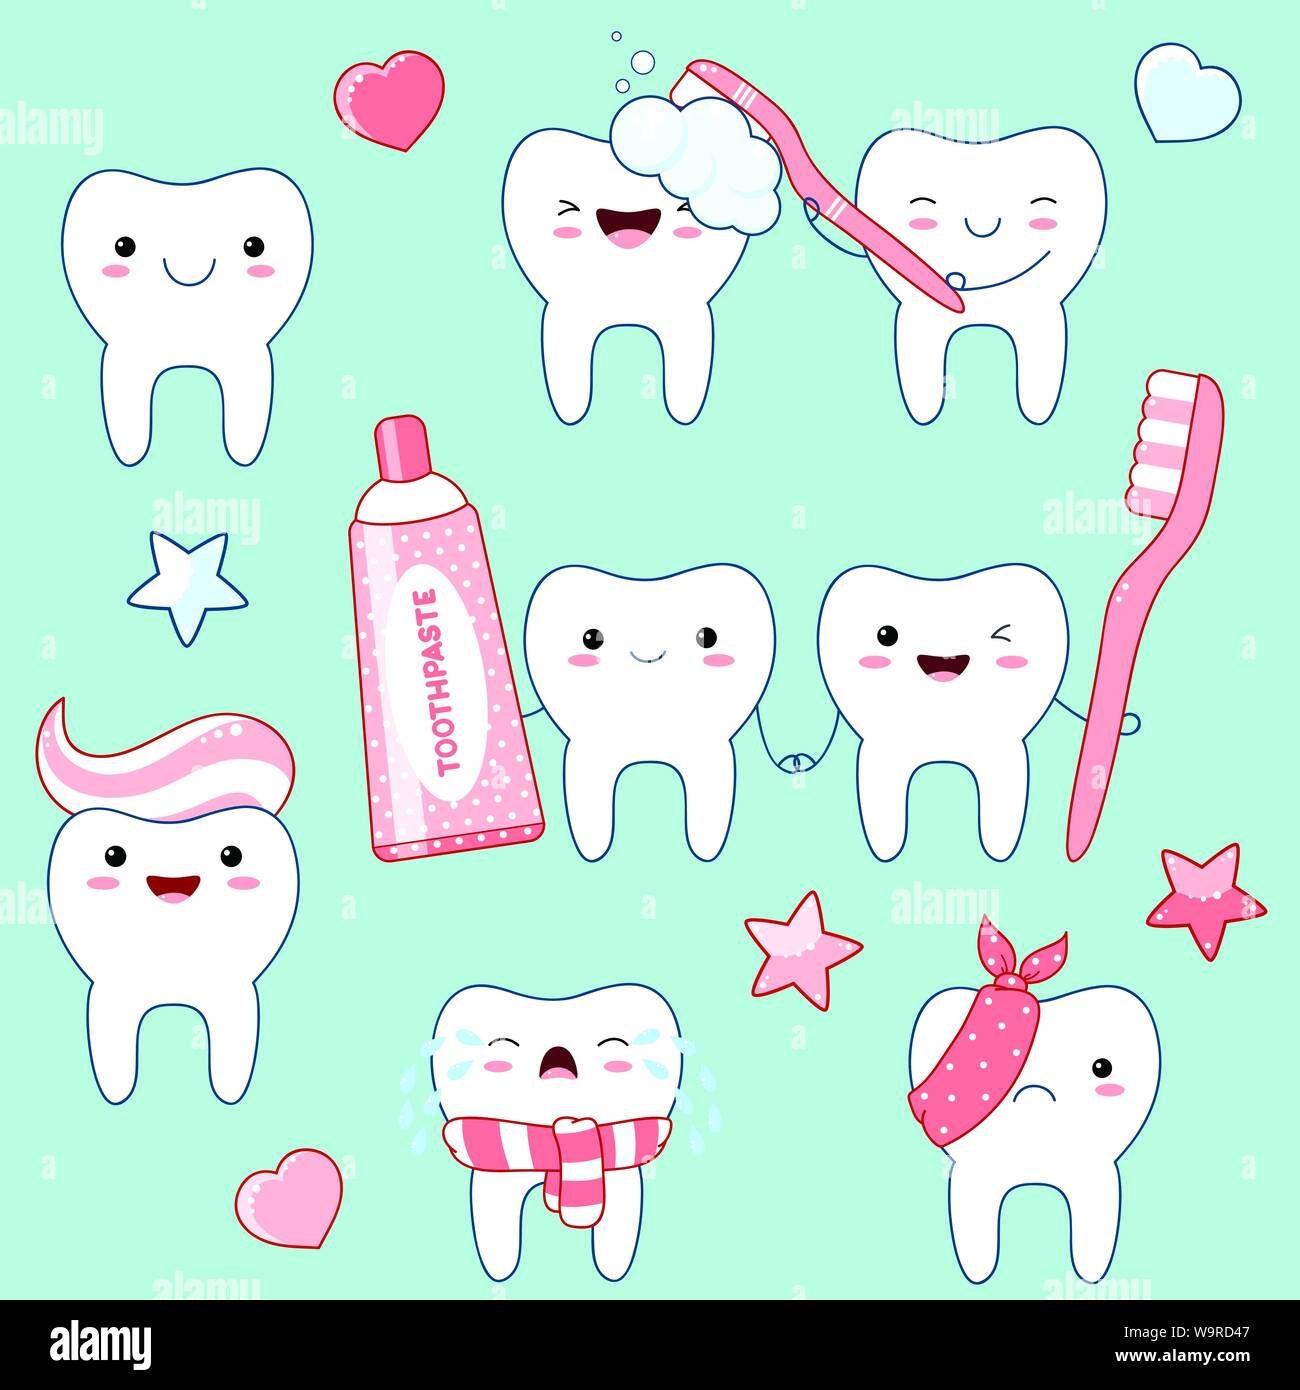 Satz von Süß lustig Zähne Symbole in kawaii Stil mit lächelnden Gesicht und rosa Wangen. Sammlung von Abbildungen auf das Thema Mundhygiene. EPS8 Stock Vektor